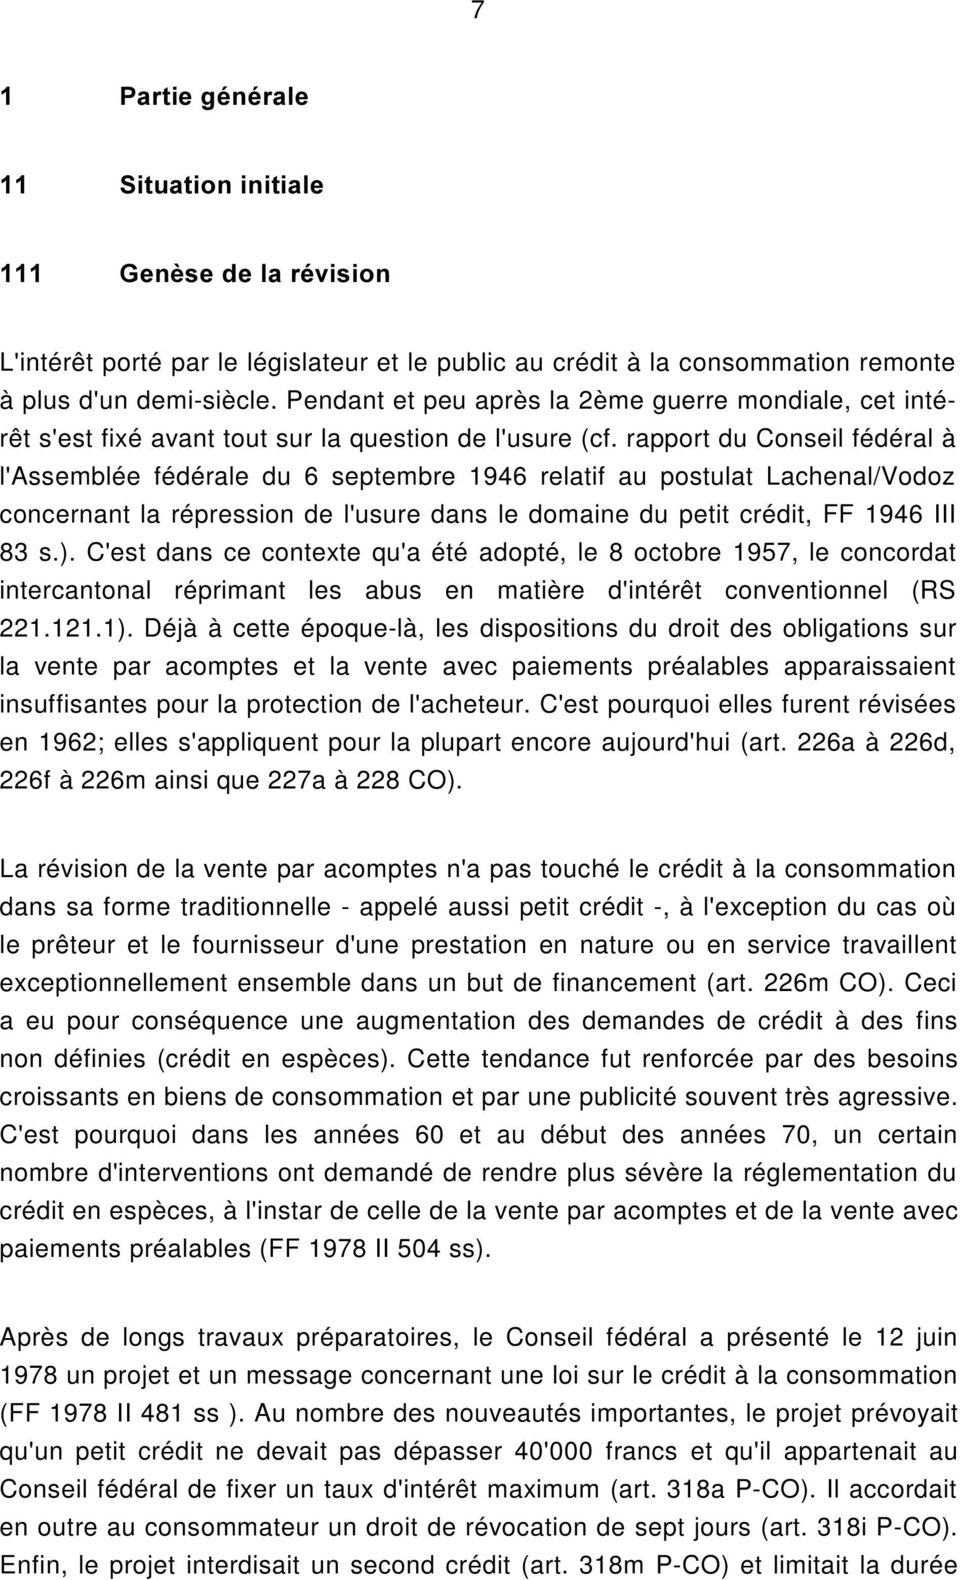 rapport du Conseil fédéral à l'assemblée fédérale du 6 septembre 1946 relatif au postulat Lachenal/Vodoz concernant la répression de l'usure dans le domaine du petit crédit, FF 1946 III 83 s.).